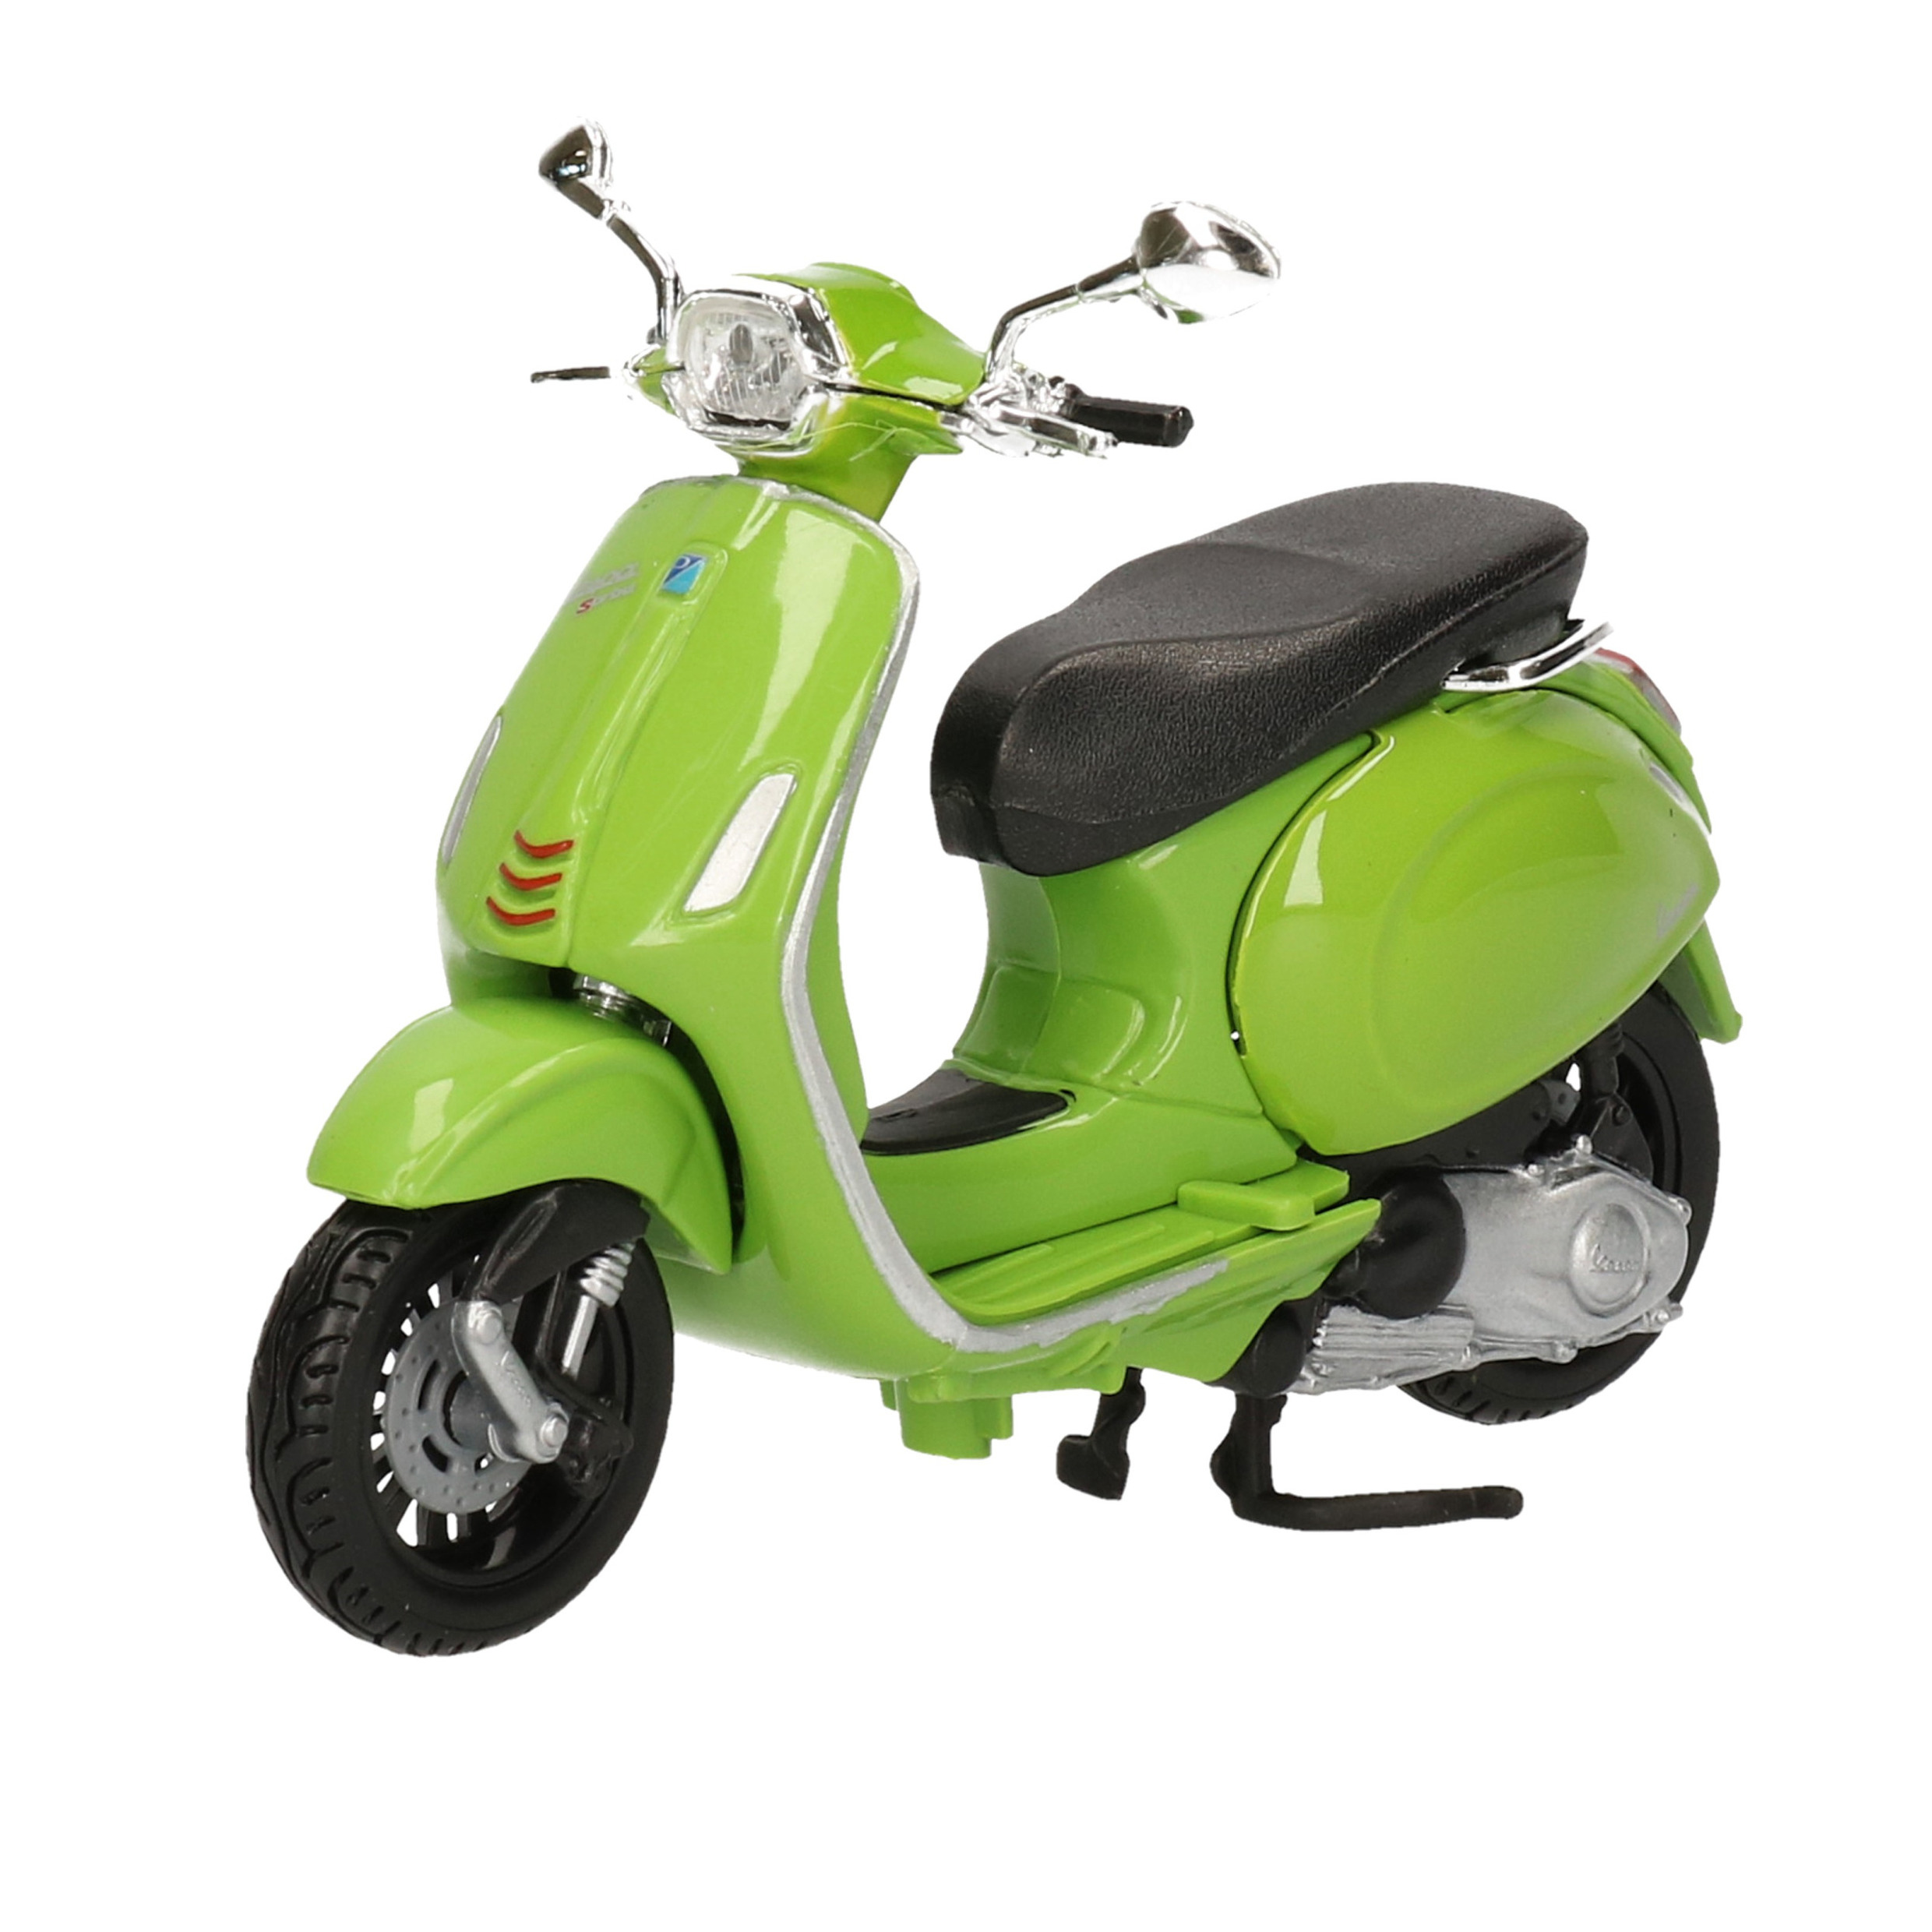 Speelgoed scooter Vespa Sprint 150 ABS 2018 groen schaalmodel 1:18 10 x 5 x 7 cm